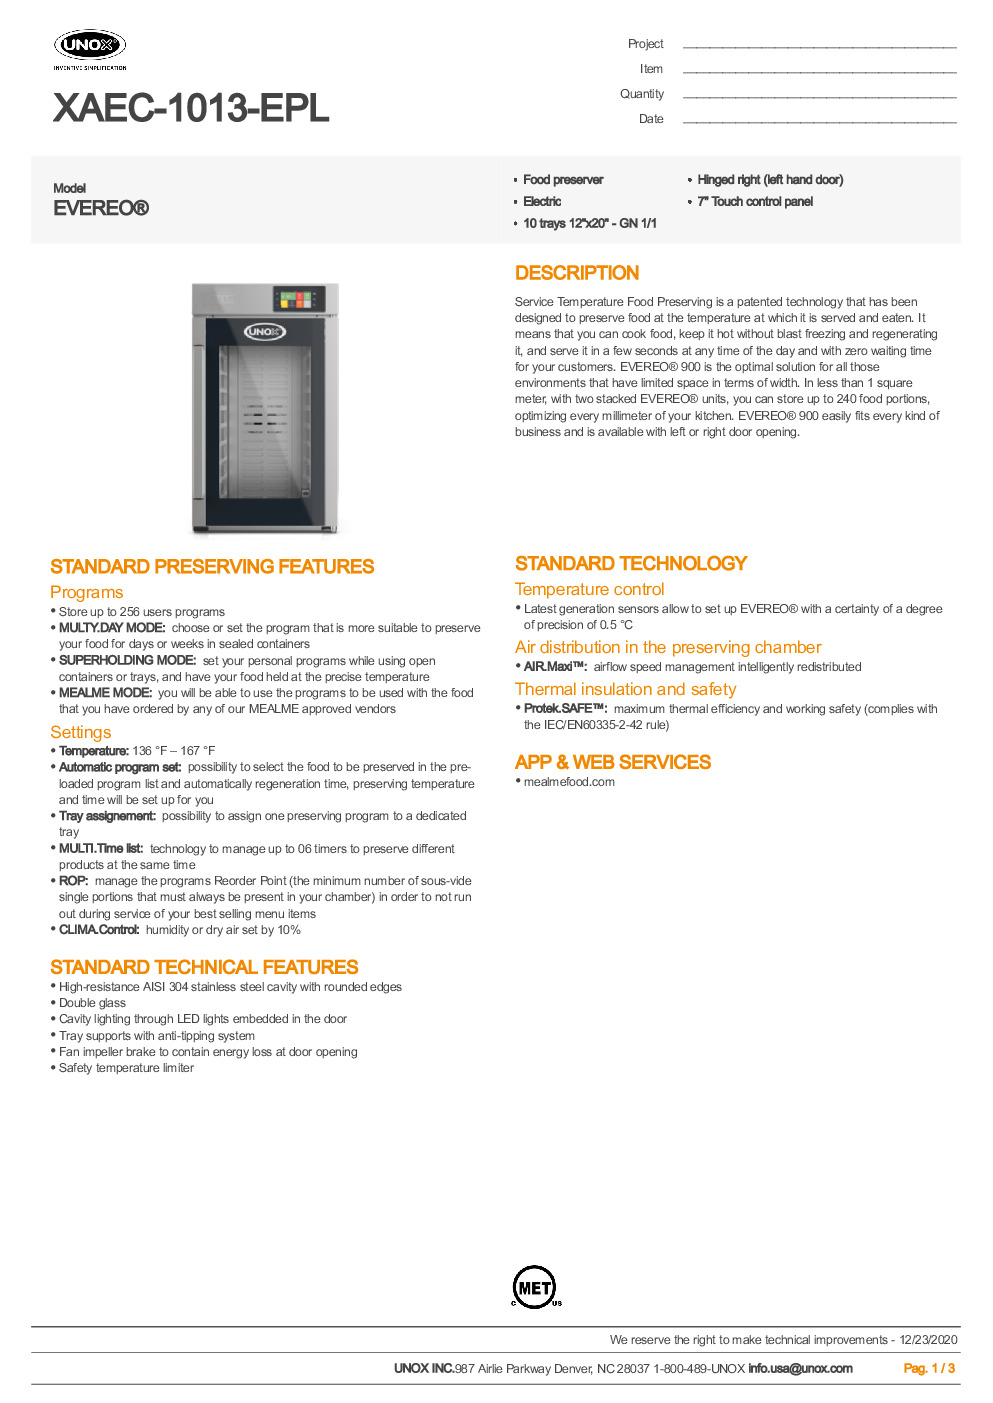 UNOX XAEC-1013-EPL Reach-In Combi Oven/Food Preserver